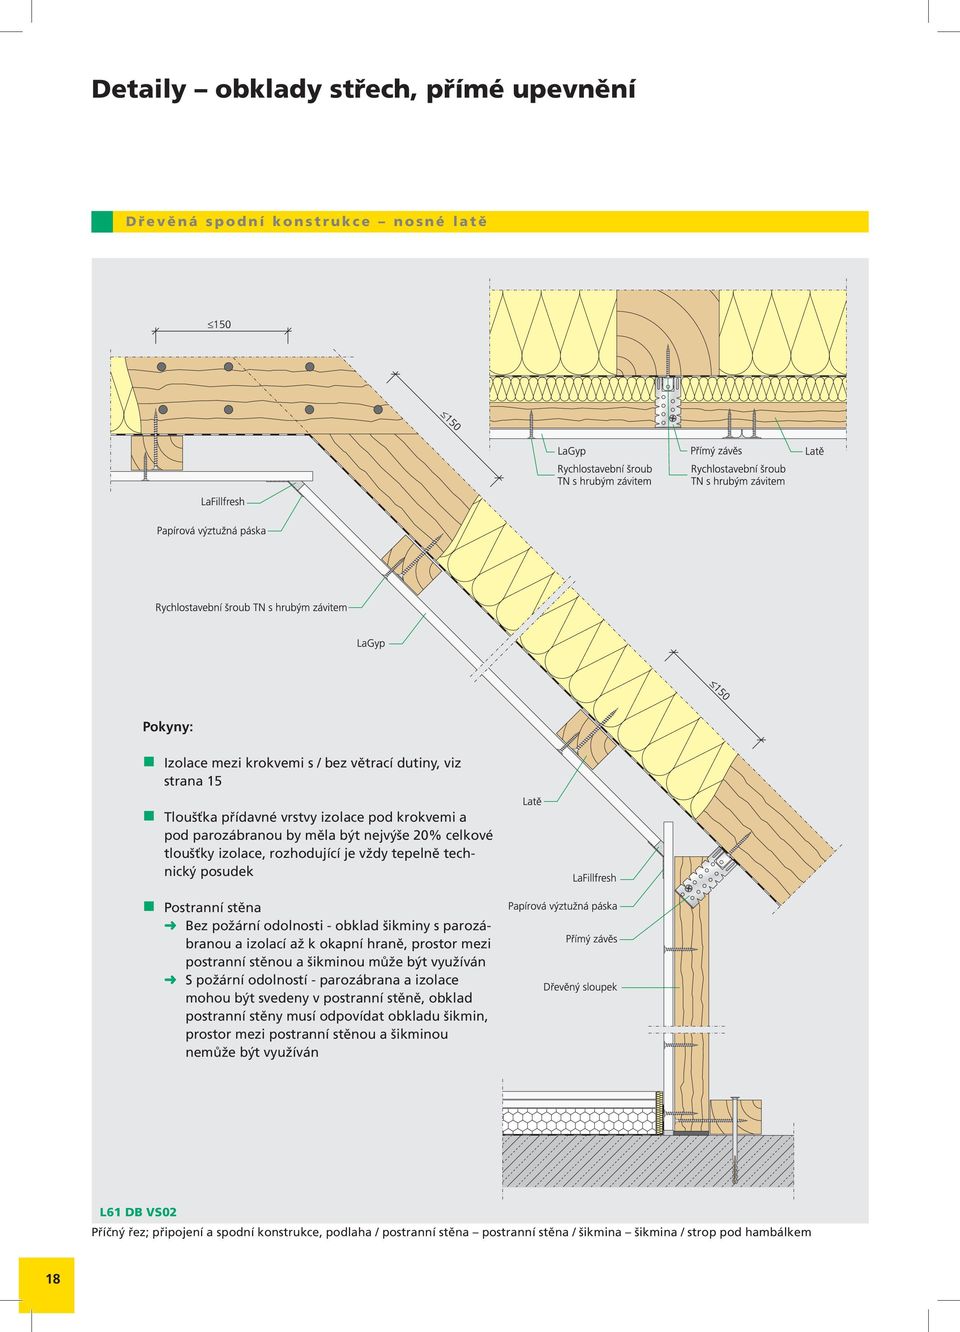 okapní hraně, prostor mezi postranní stěnou a šikminou může být využíván S požární odolností - parozábrana a izolace mohou být svedeny v postranní stěně, obklad postranní stěny musí odpovídat obkladu